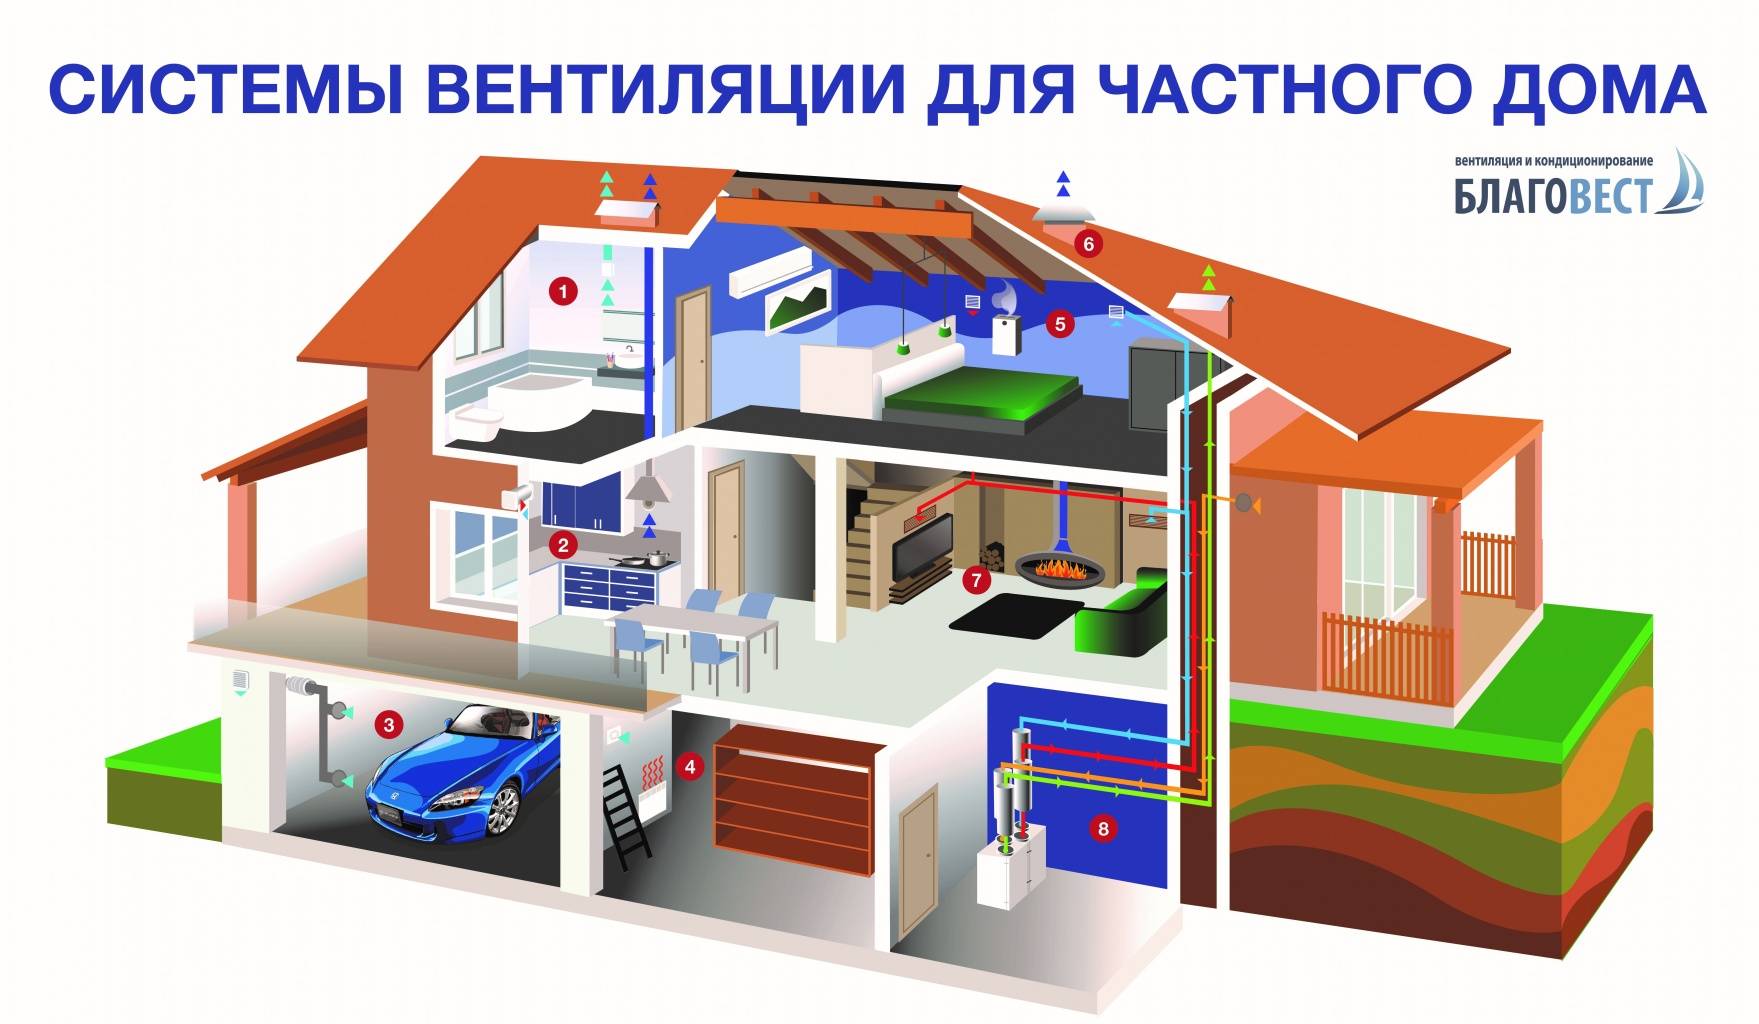 Вентиляция и кондиционирование дома – создание оптимальной воздушной среды в помещении